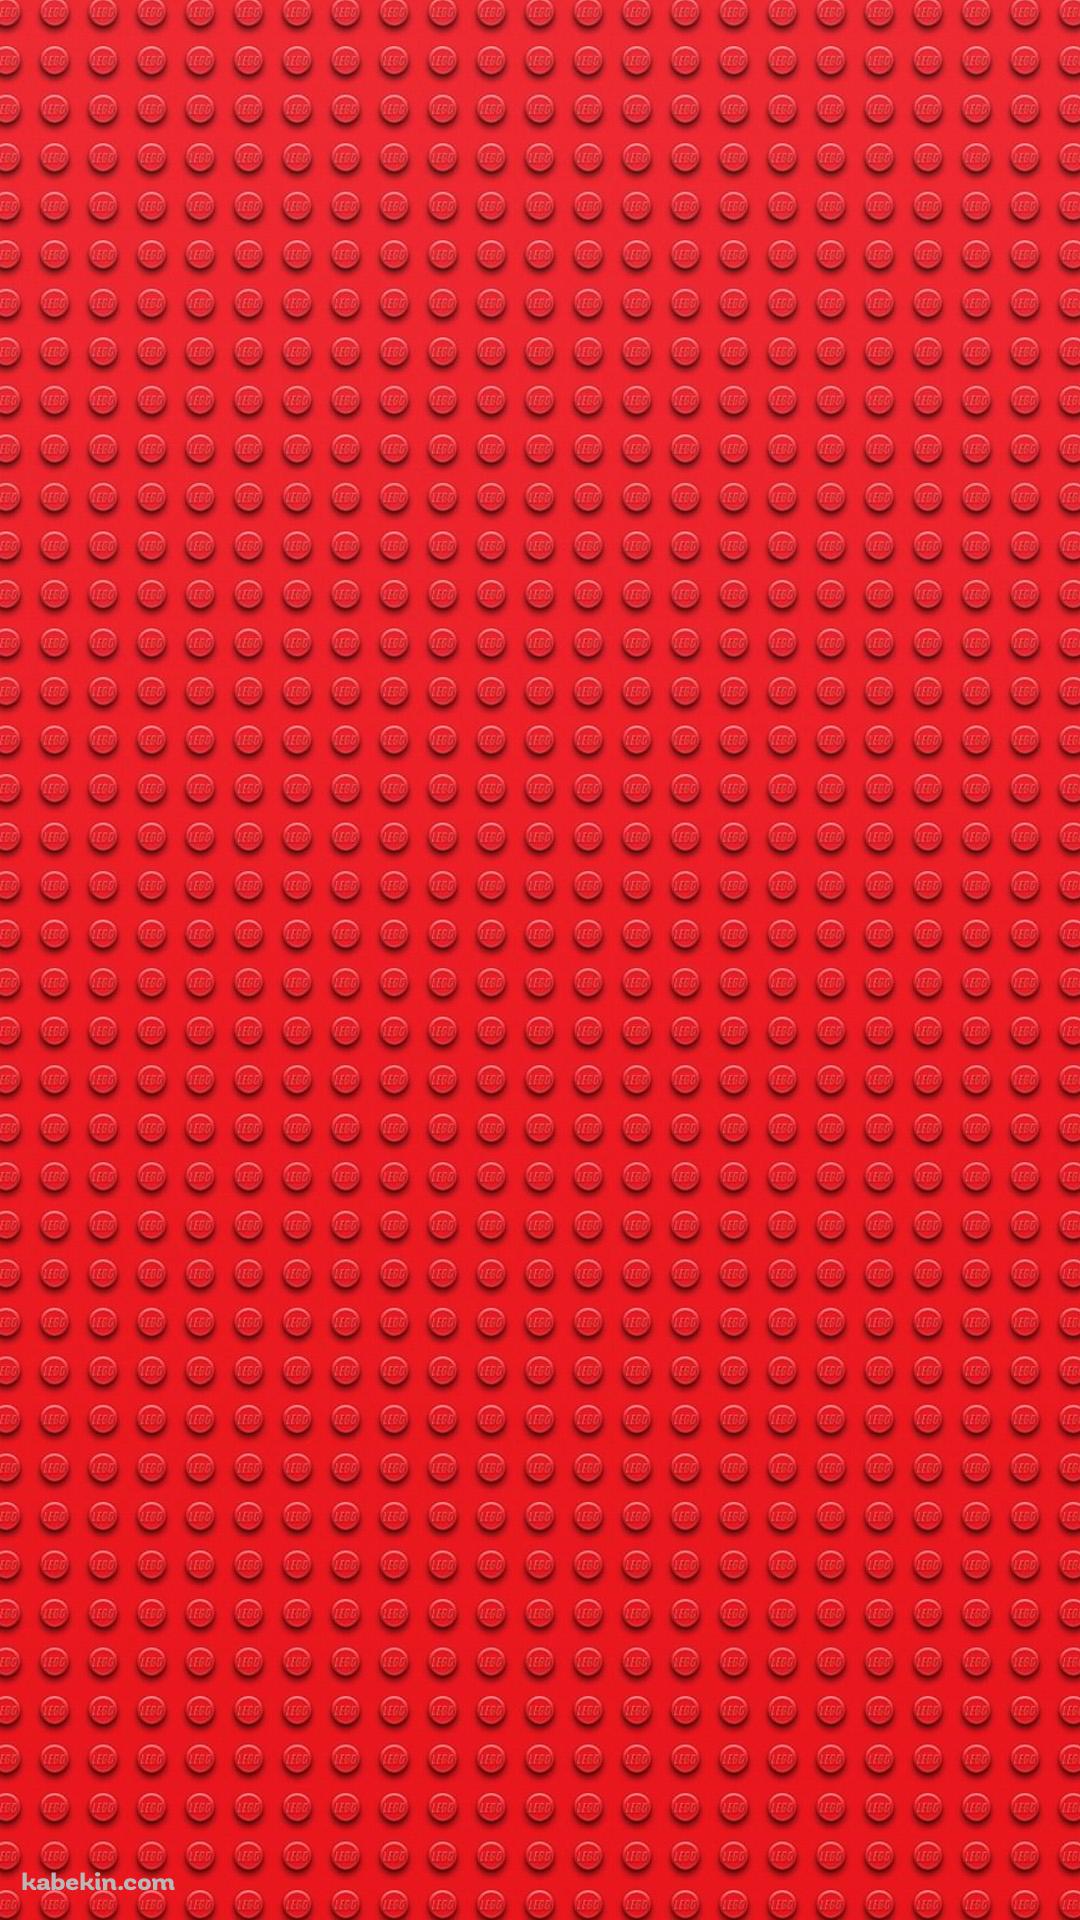 赤 レゴブロックのandroid壁紙 1080 X 1920 壁紙キングダム スマホ版